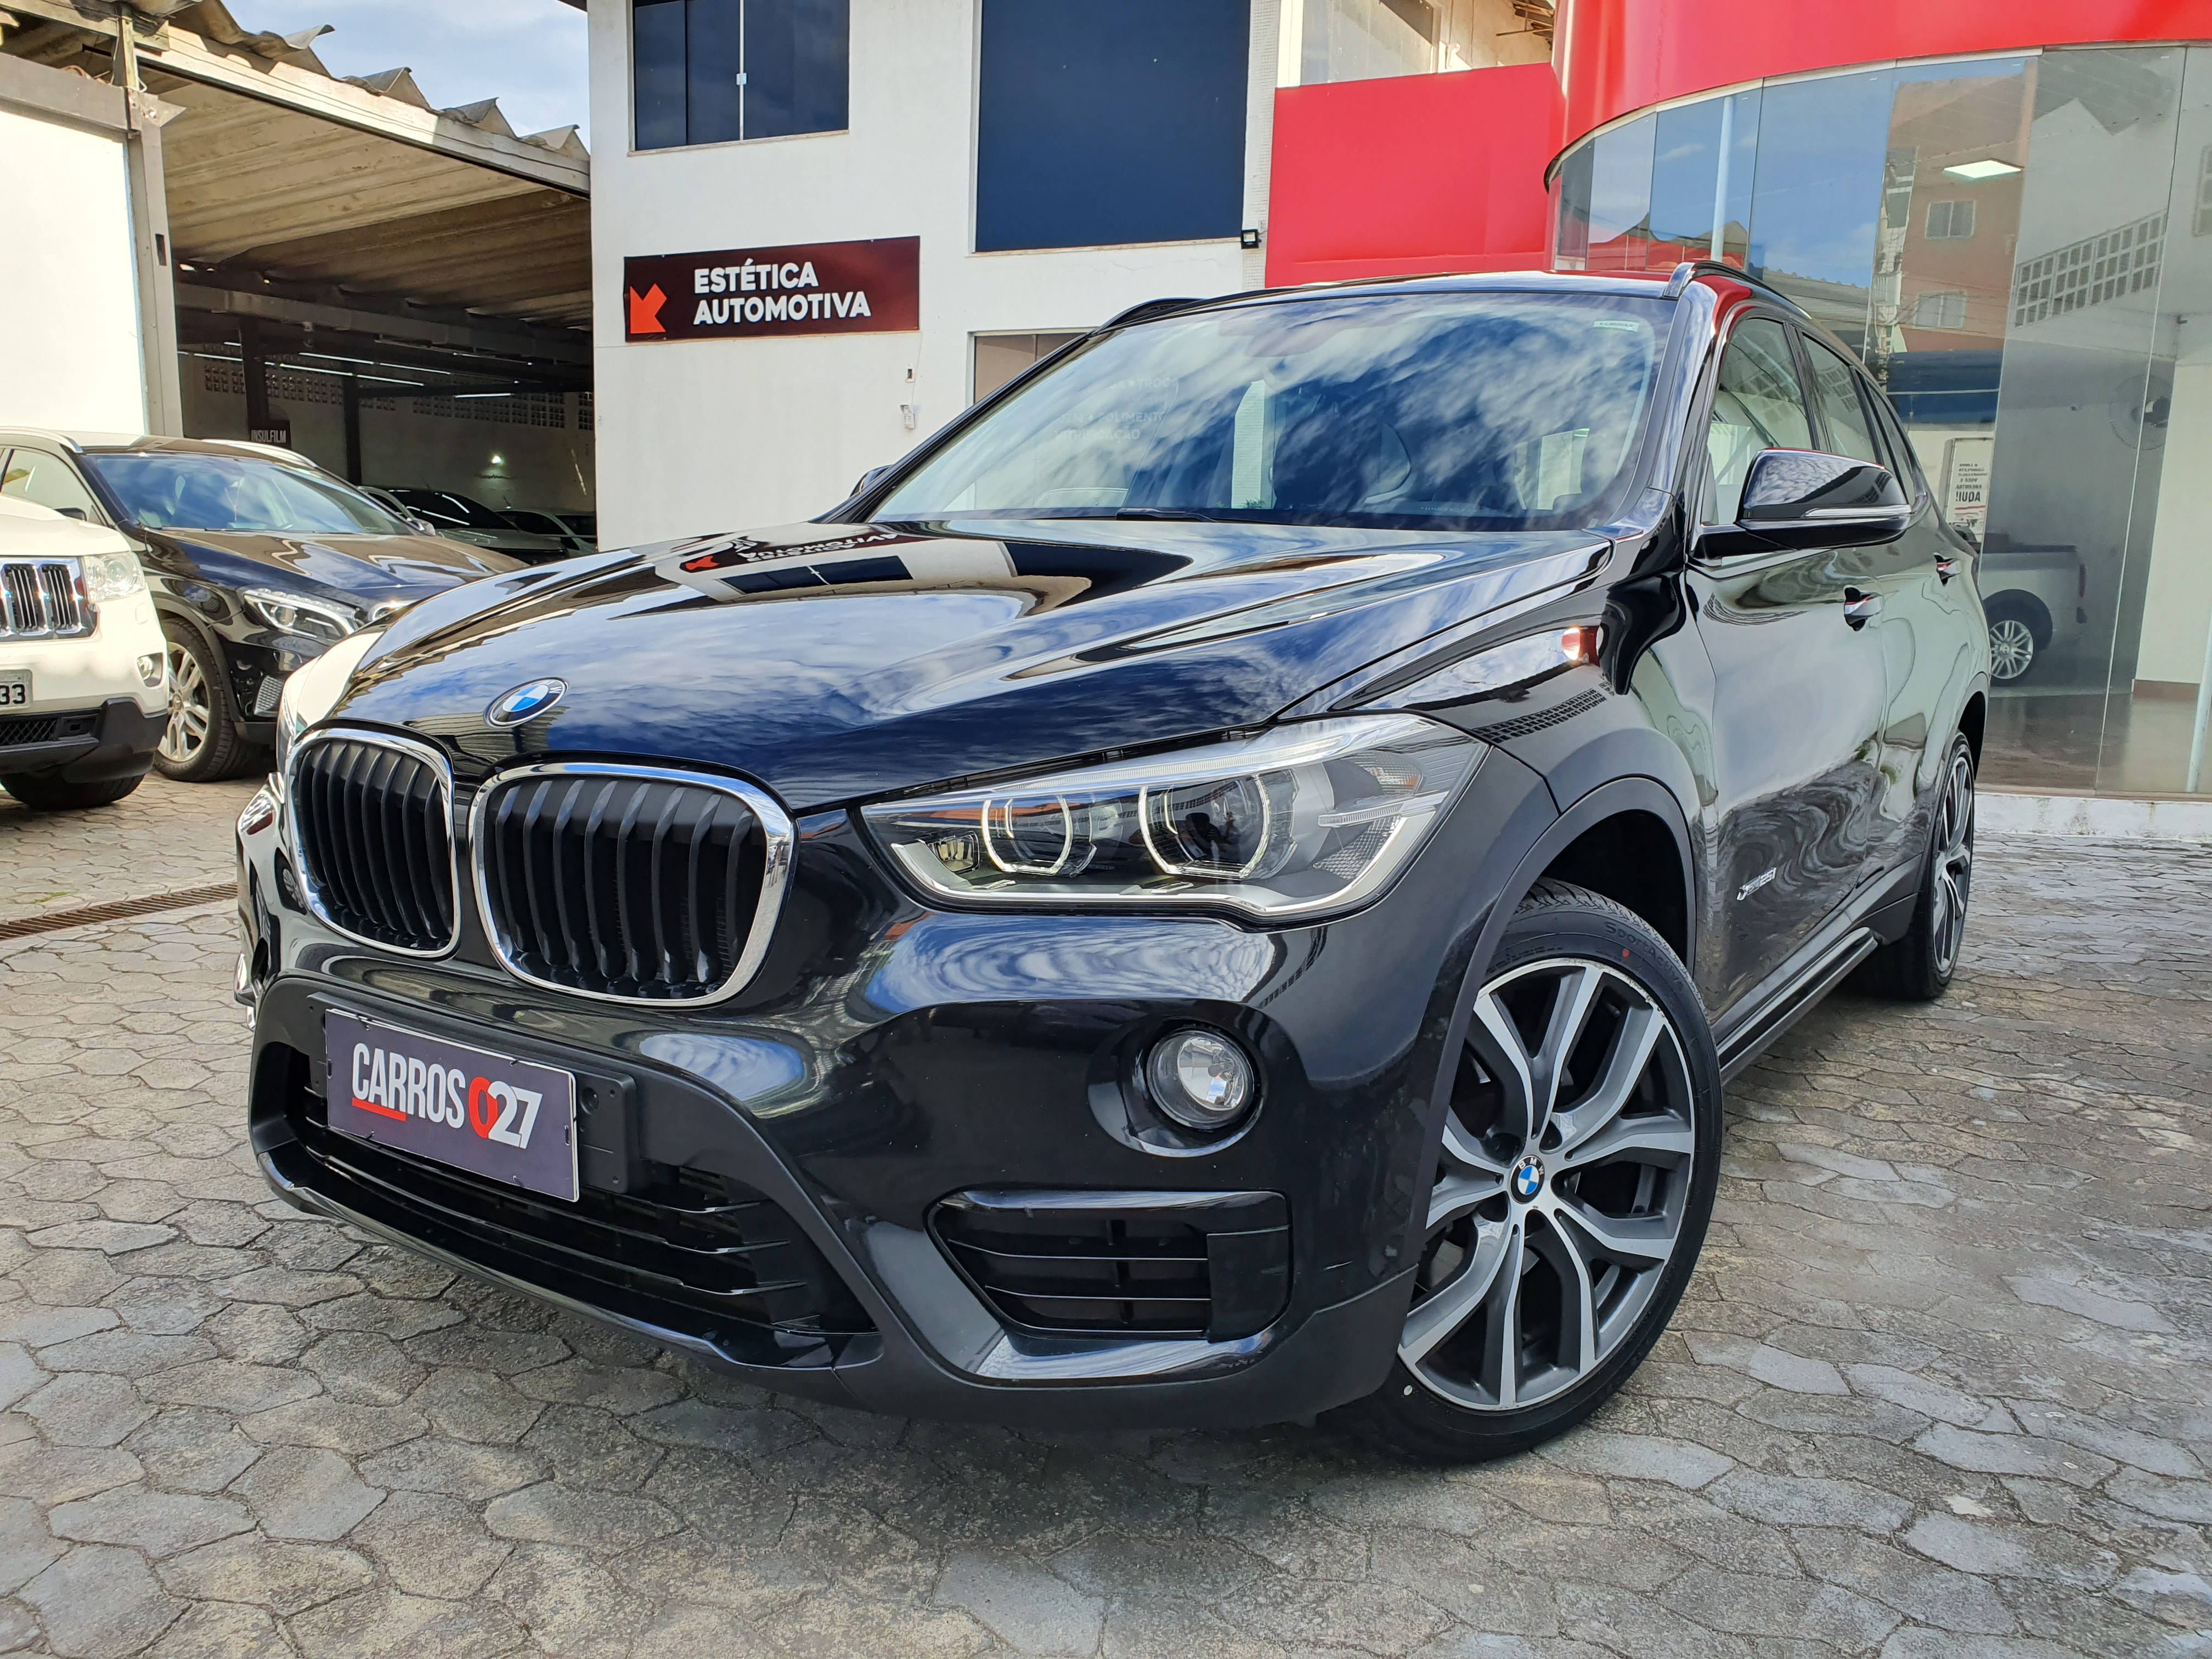 BMW X1 Xdrive 25i Sport – O SUV PREMIUM mais vendido do Brasil